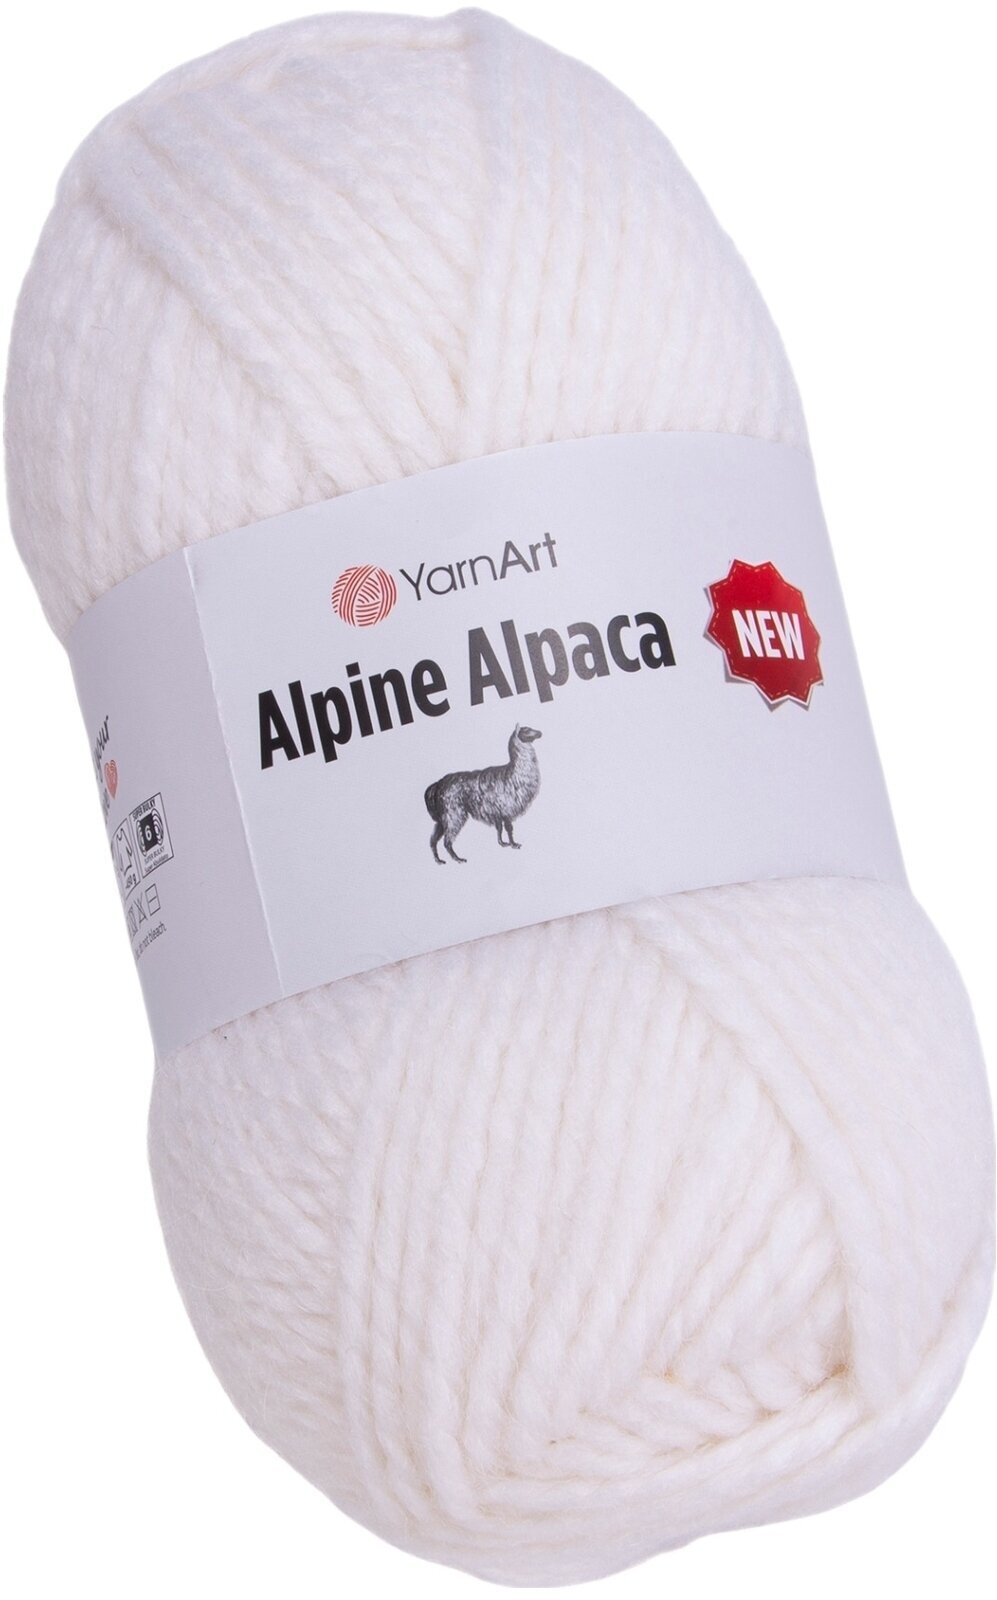 Νήμα Πλεξίματος Yarn Art Alpine Alpaca 1440 Νήμα Πλεξίματος